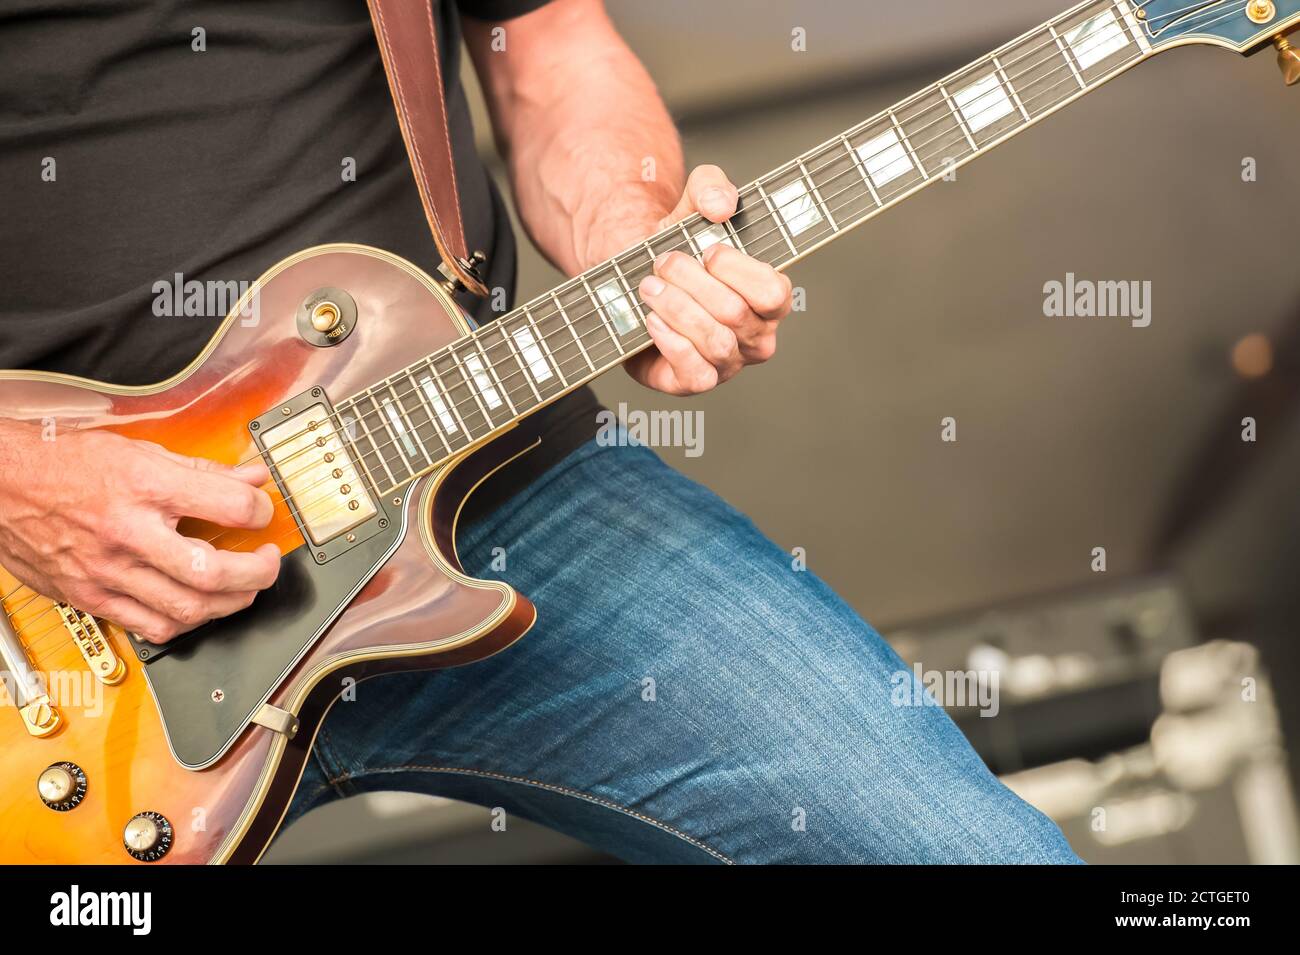 closeup of a rock musician strumming an electric guitar Stock Photo